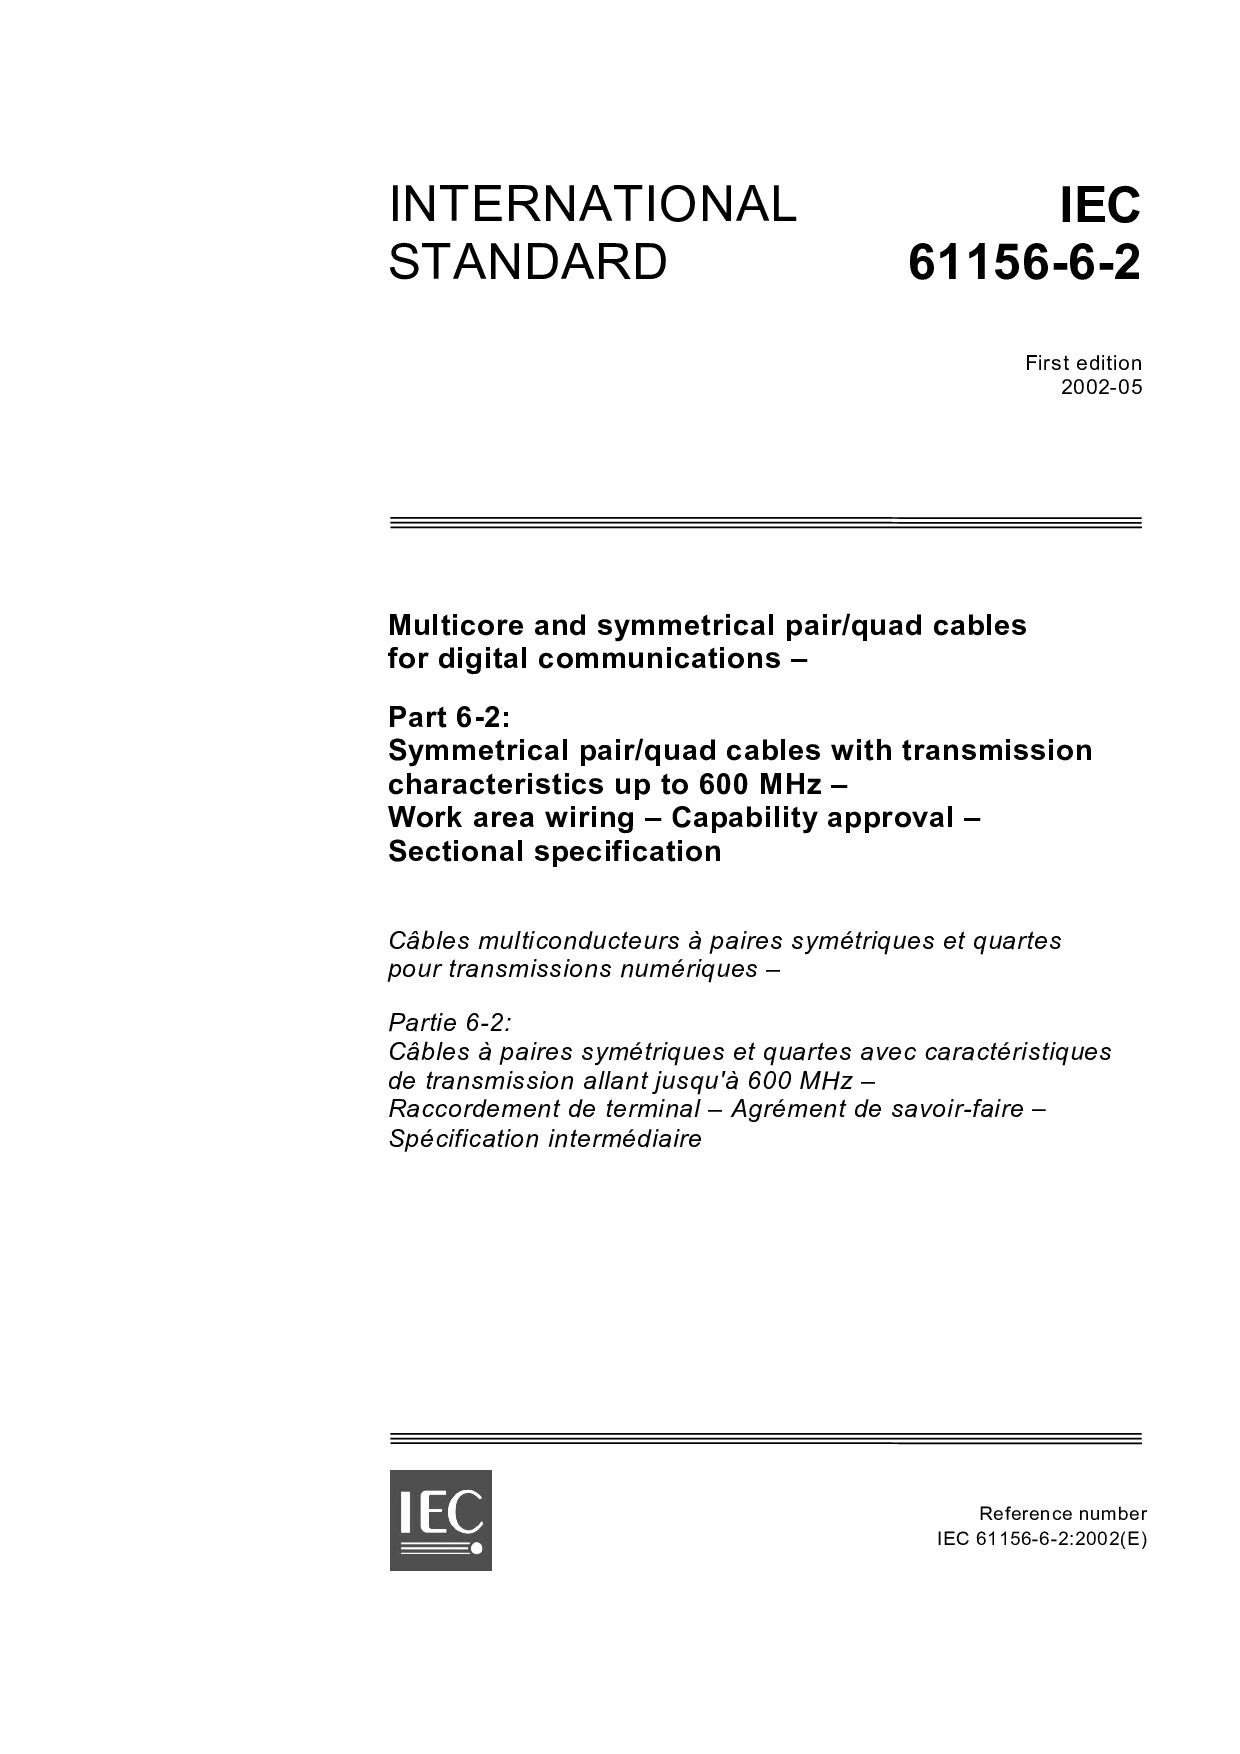 IEC 61156-6-2:2002封面图